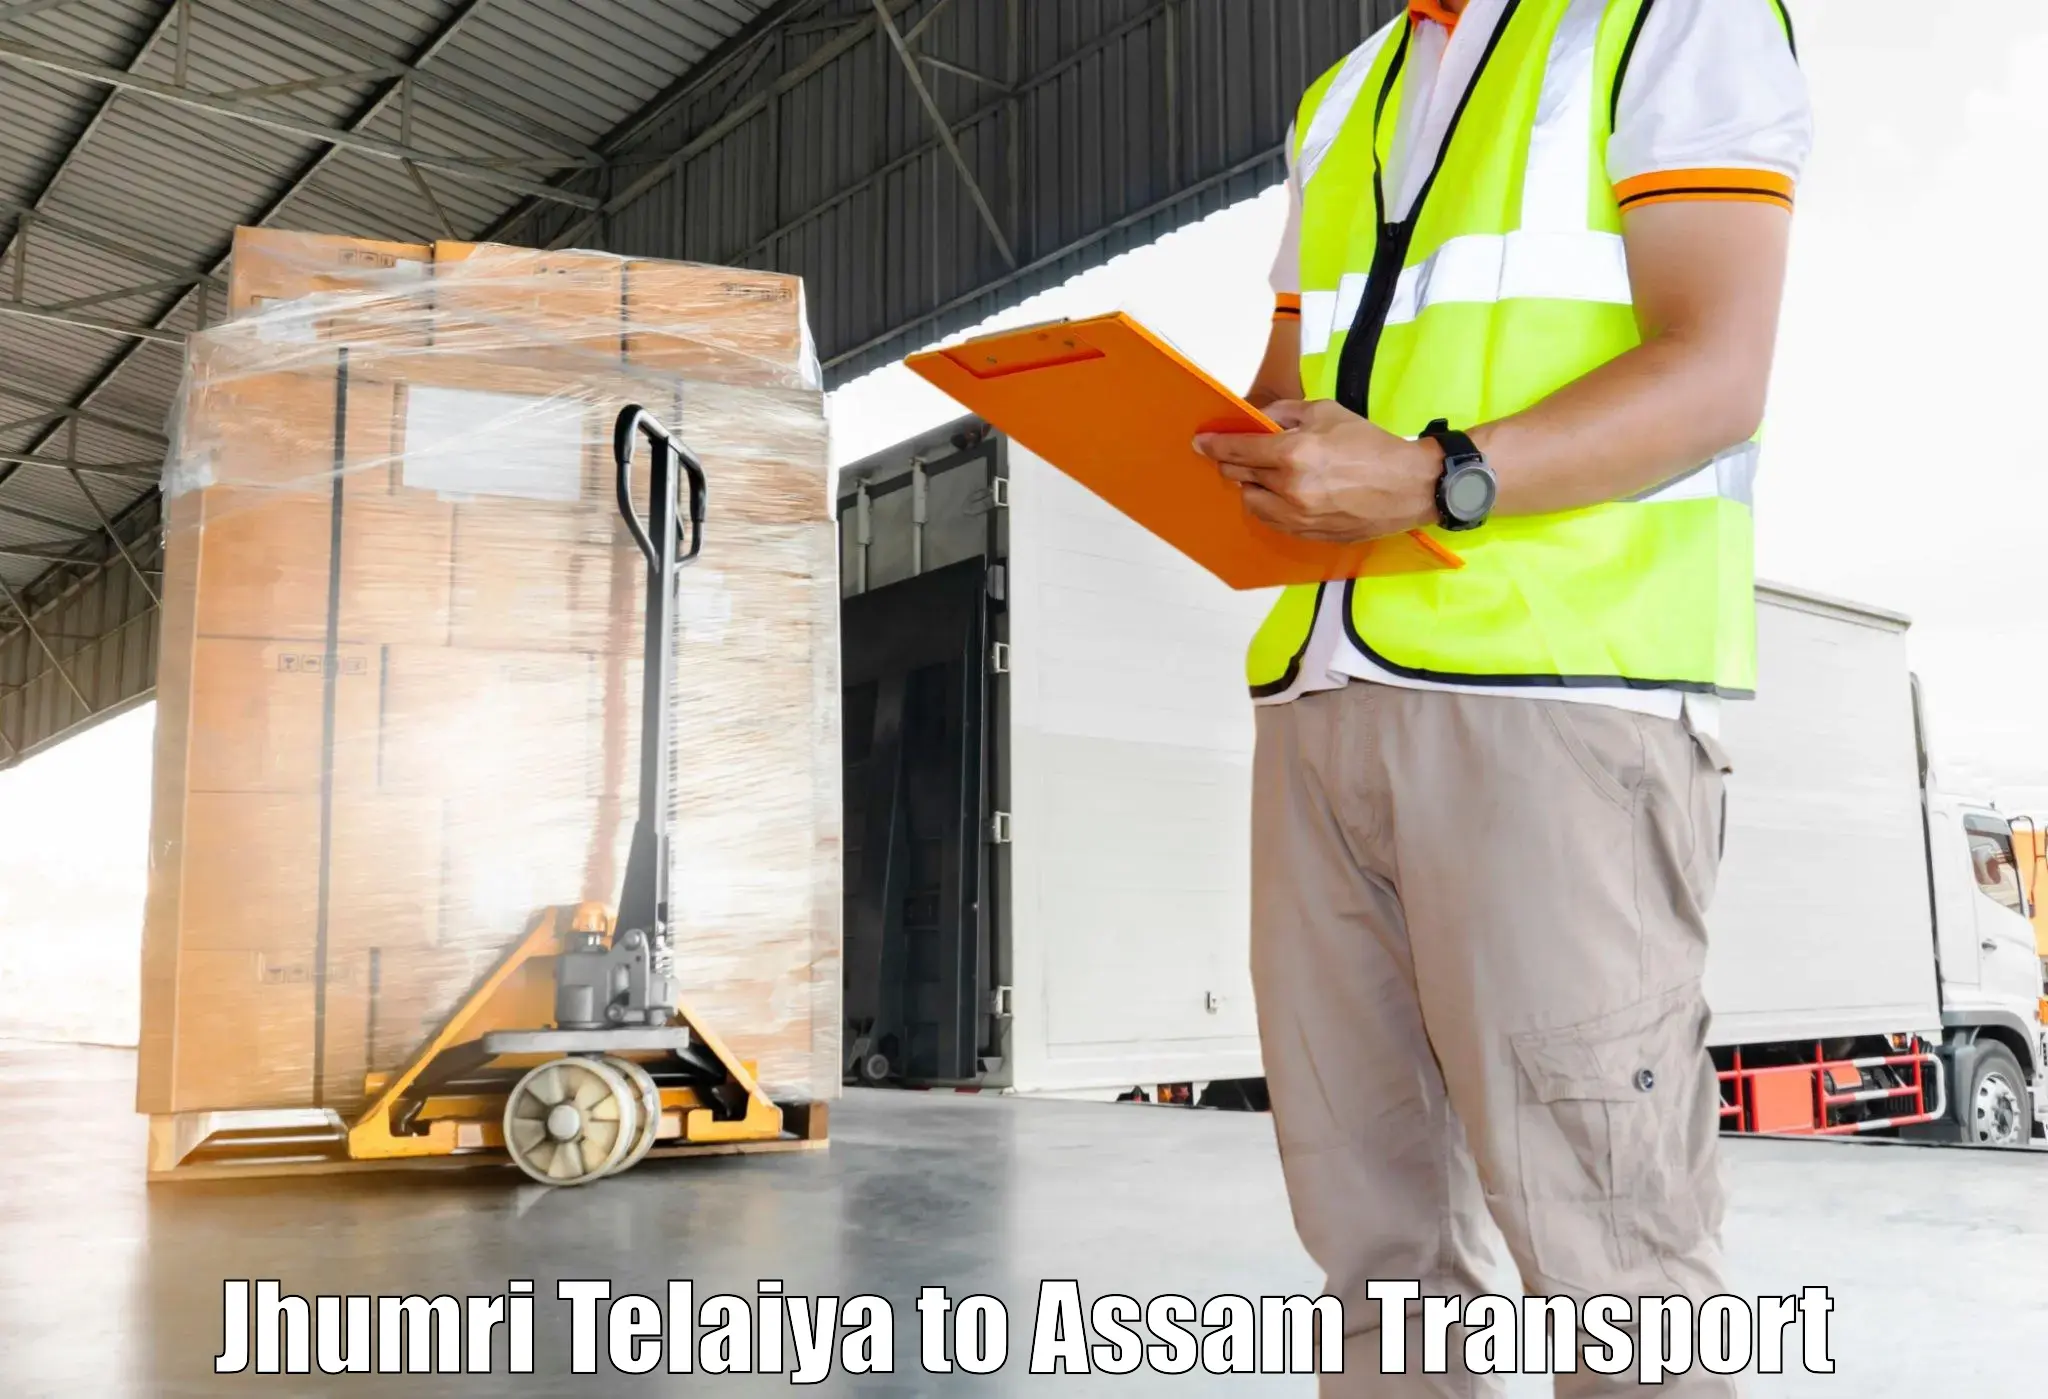 Container transport service Jhumri Telaiya to Kabuganj